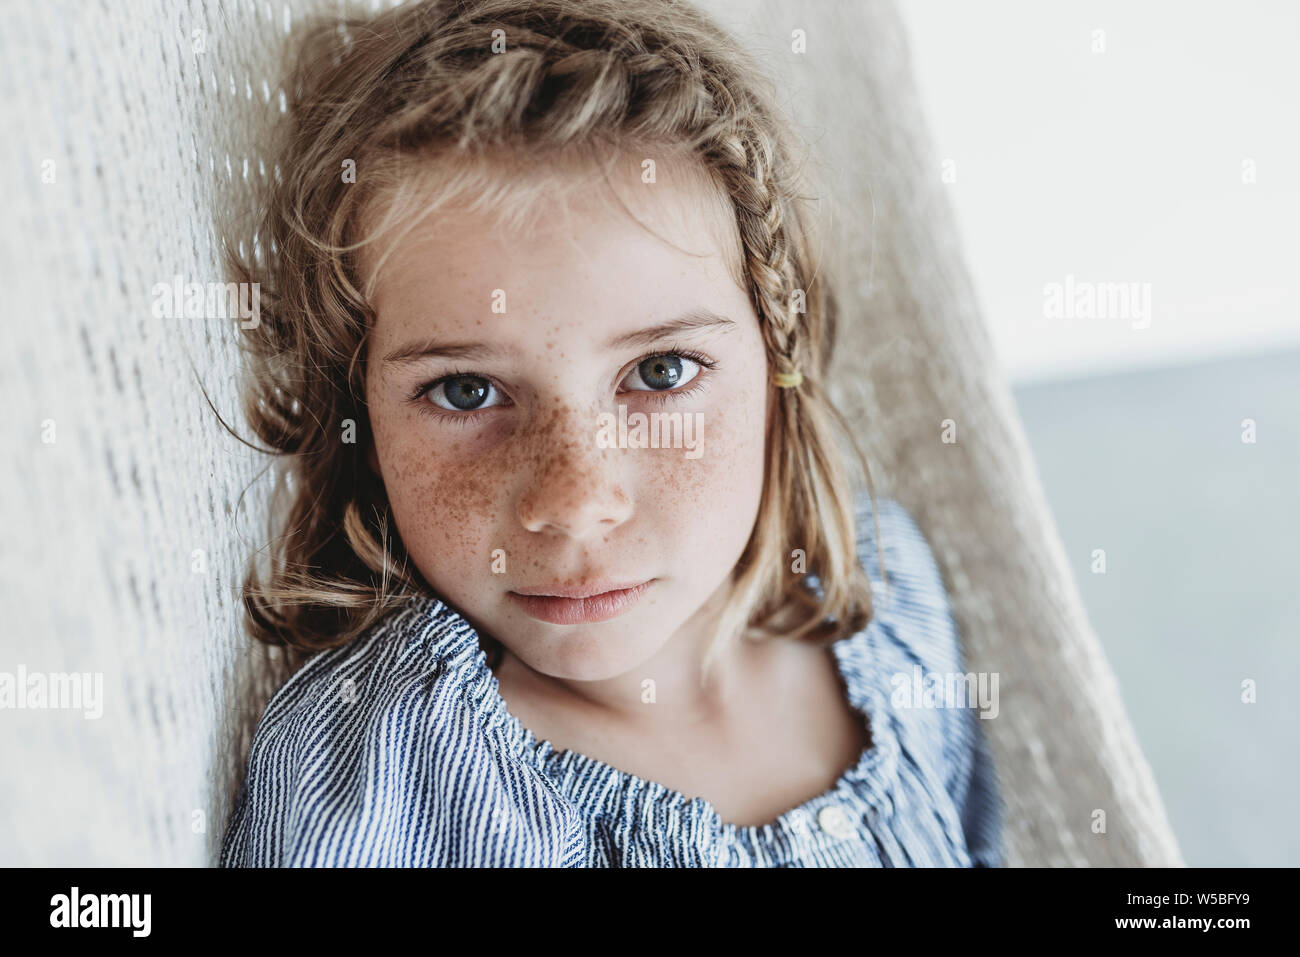 Retrato de niña en edad escolar grave con trenza en su cabello Foto de stock